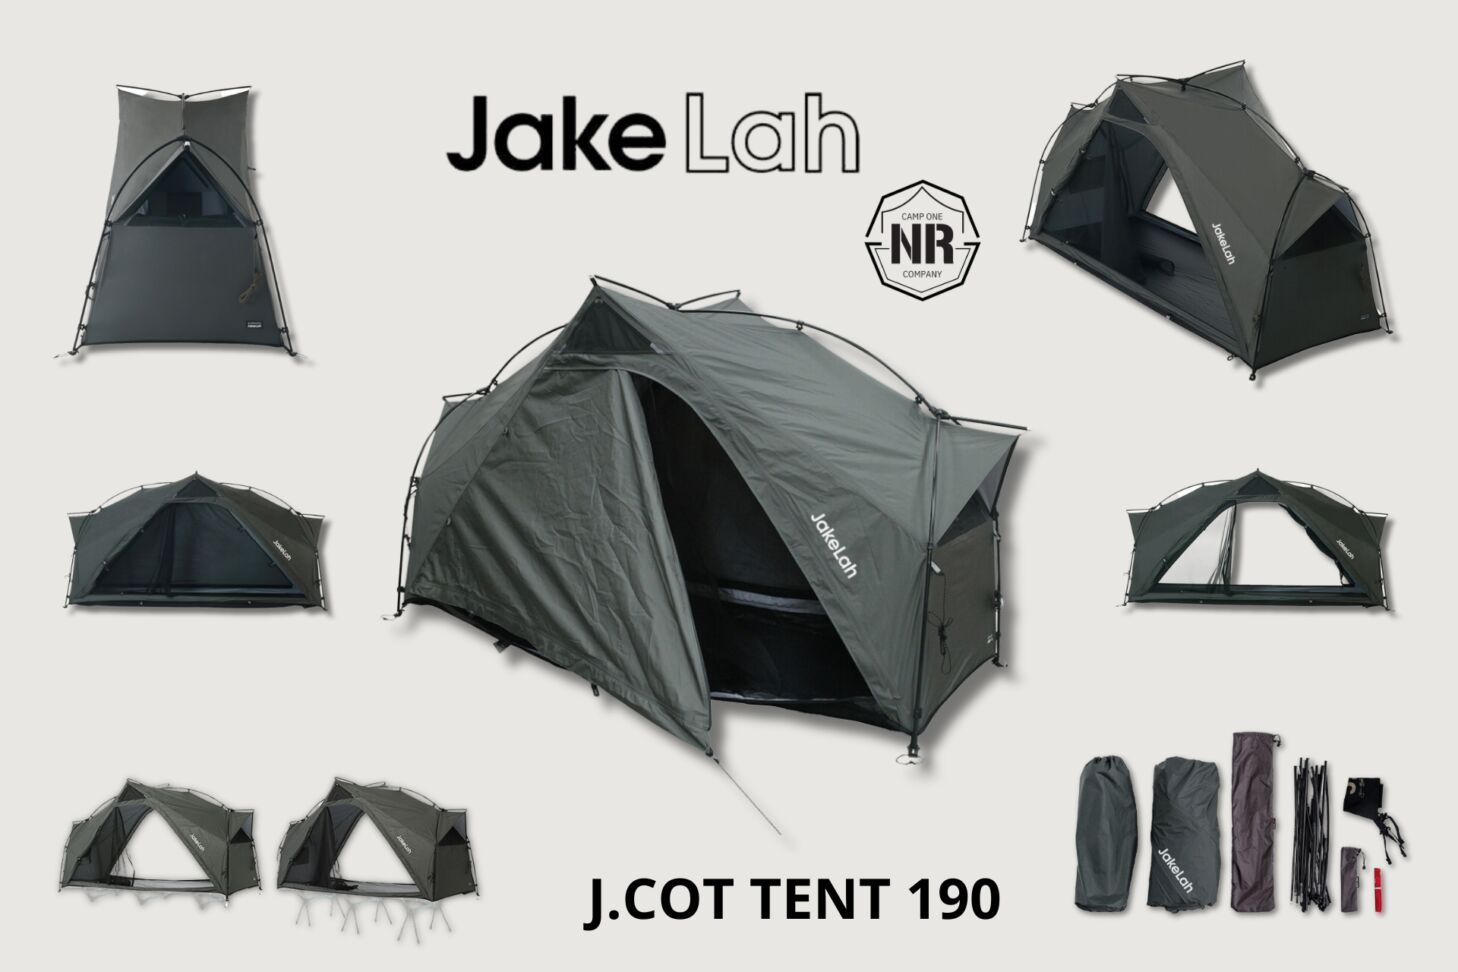 J.cot tent 190 BY Jake Lah